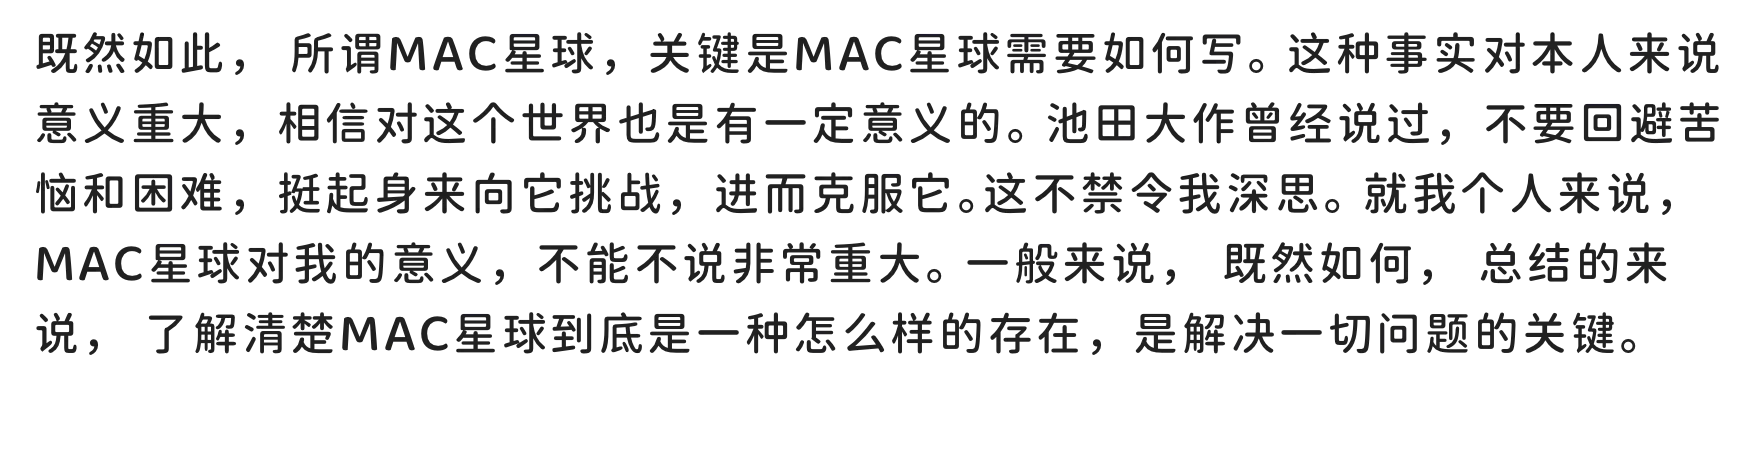 图片[1] - 「江城圆体」「免费商用」「中文字体」「400W-700W粗体调节」